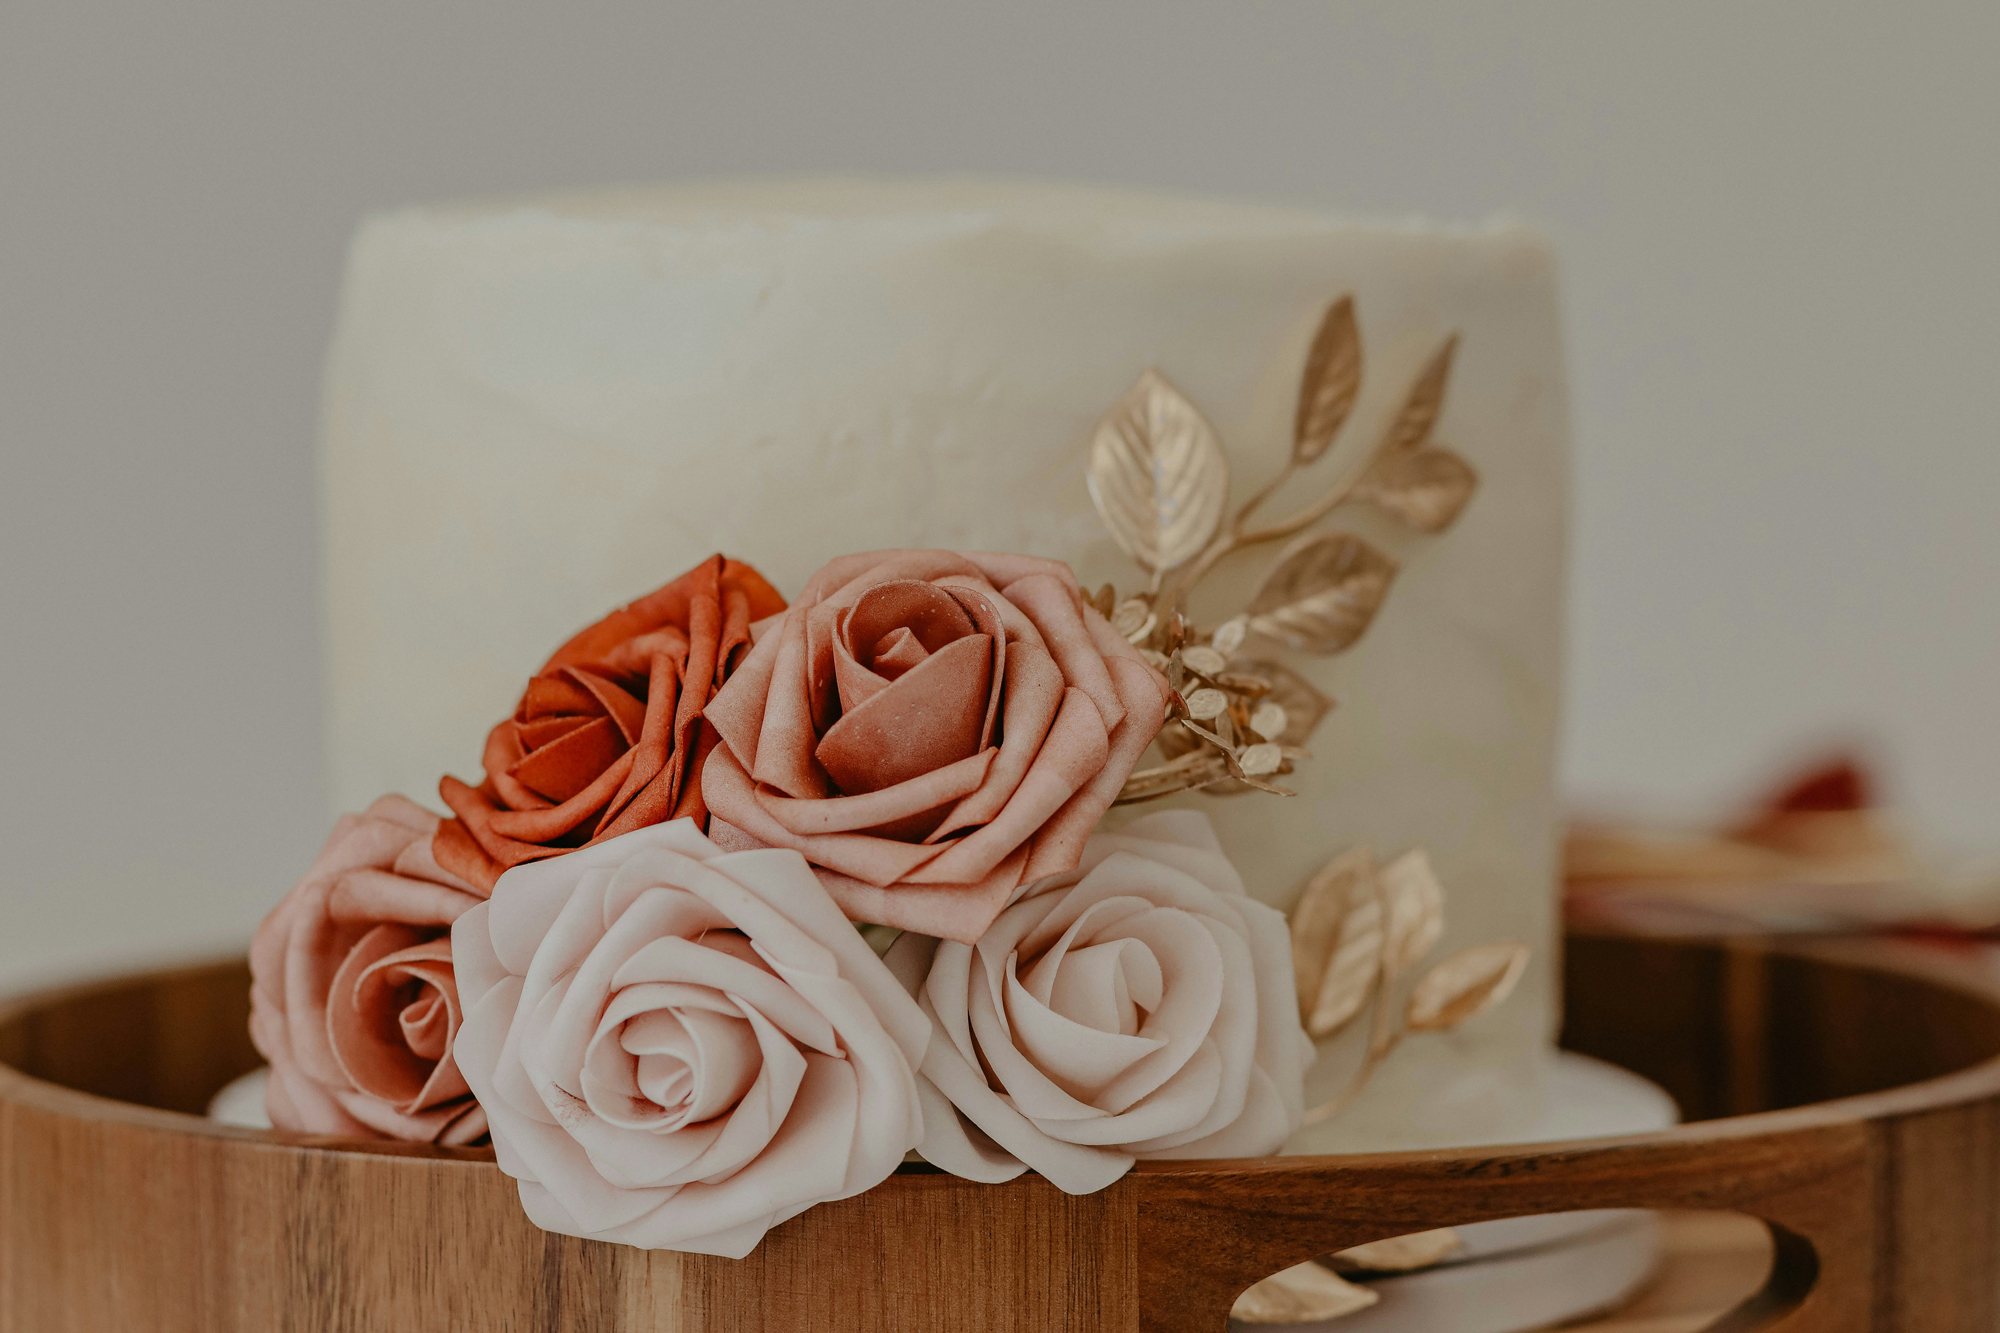 How Do You Preserve a Wedding Cake?